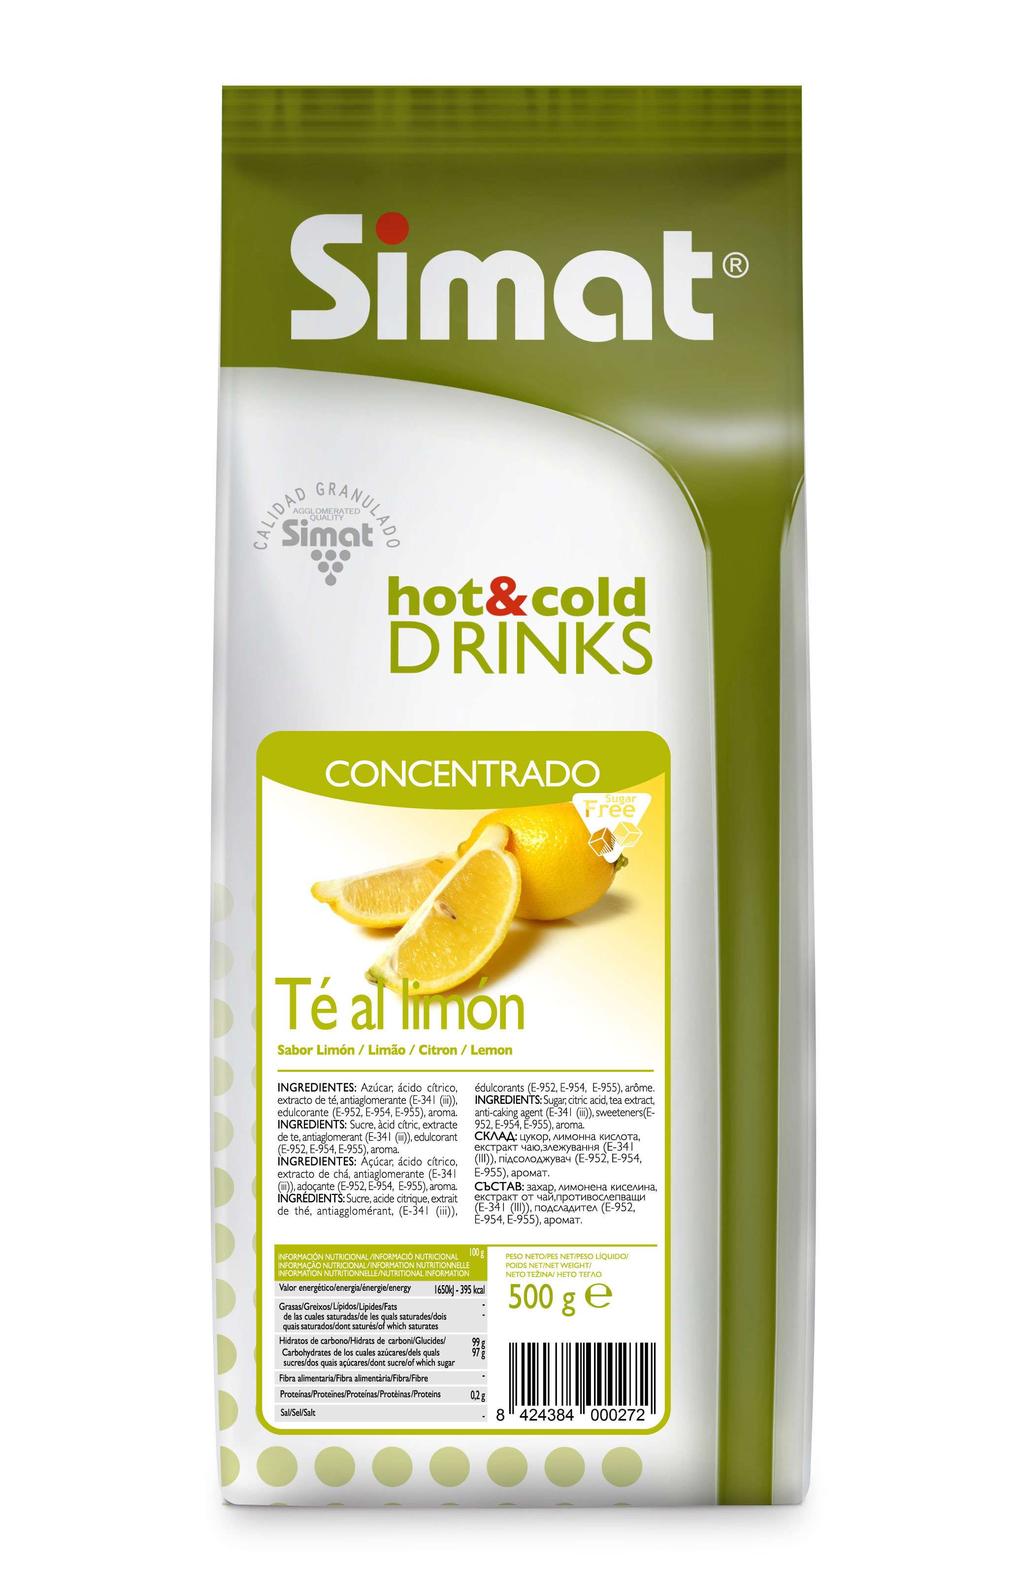 Chá Limão CONCENTRADO - SEM AÇÚCAR REF. 0031 Produto do extrato natural de chá e aroma natural de limão, adaptado às tendências de consumo atuais.